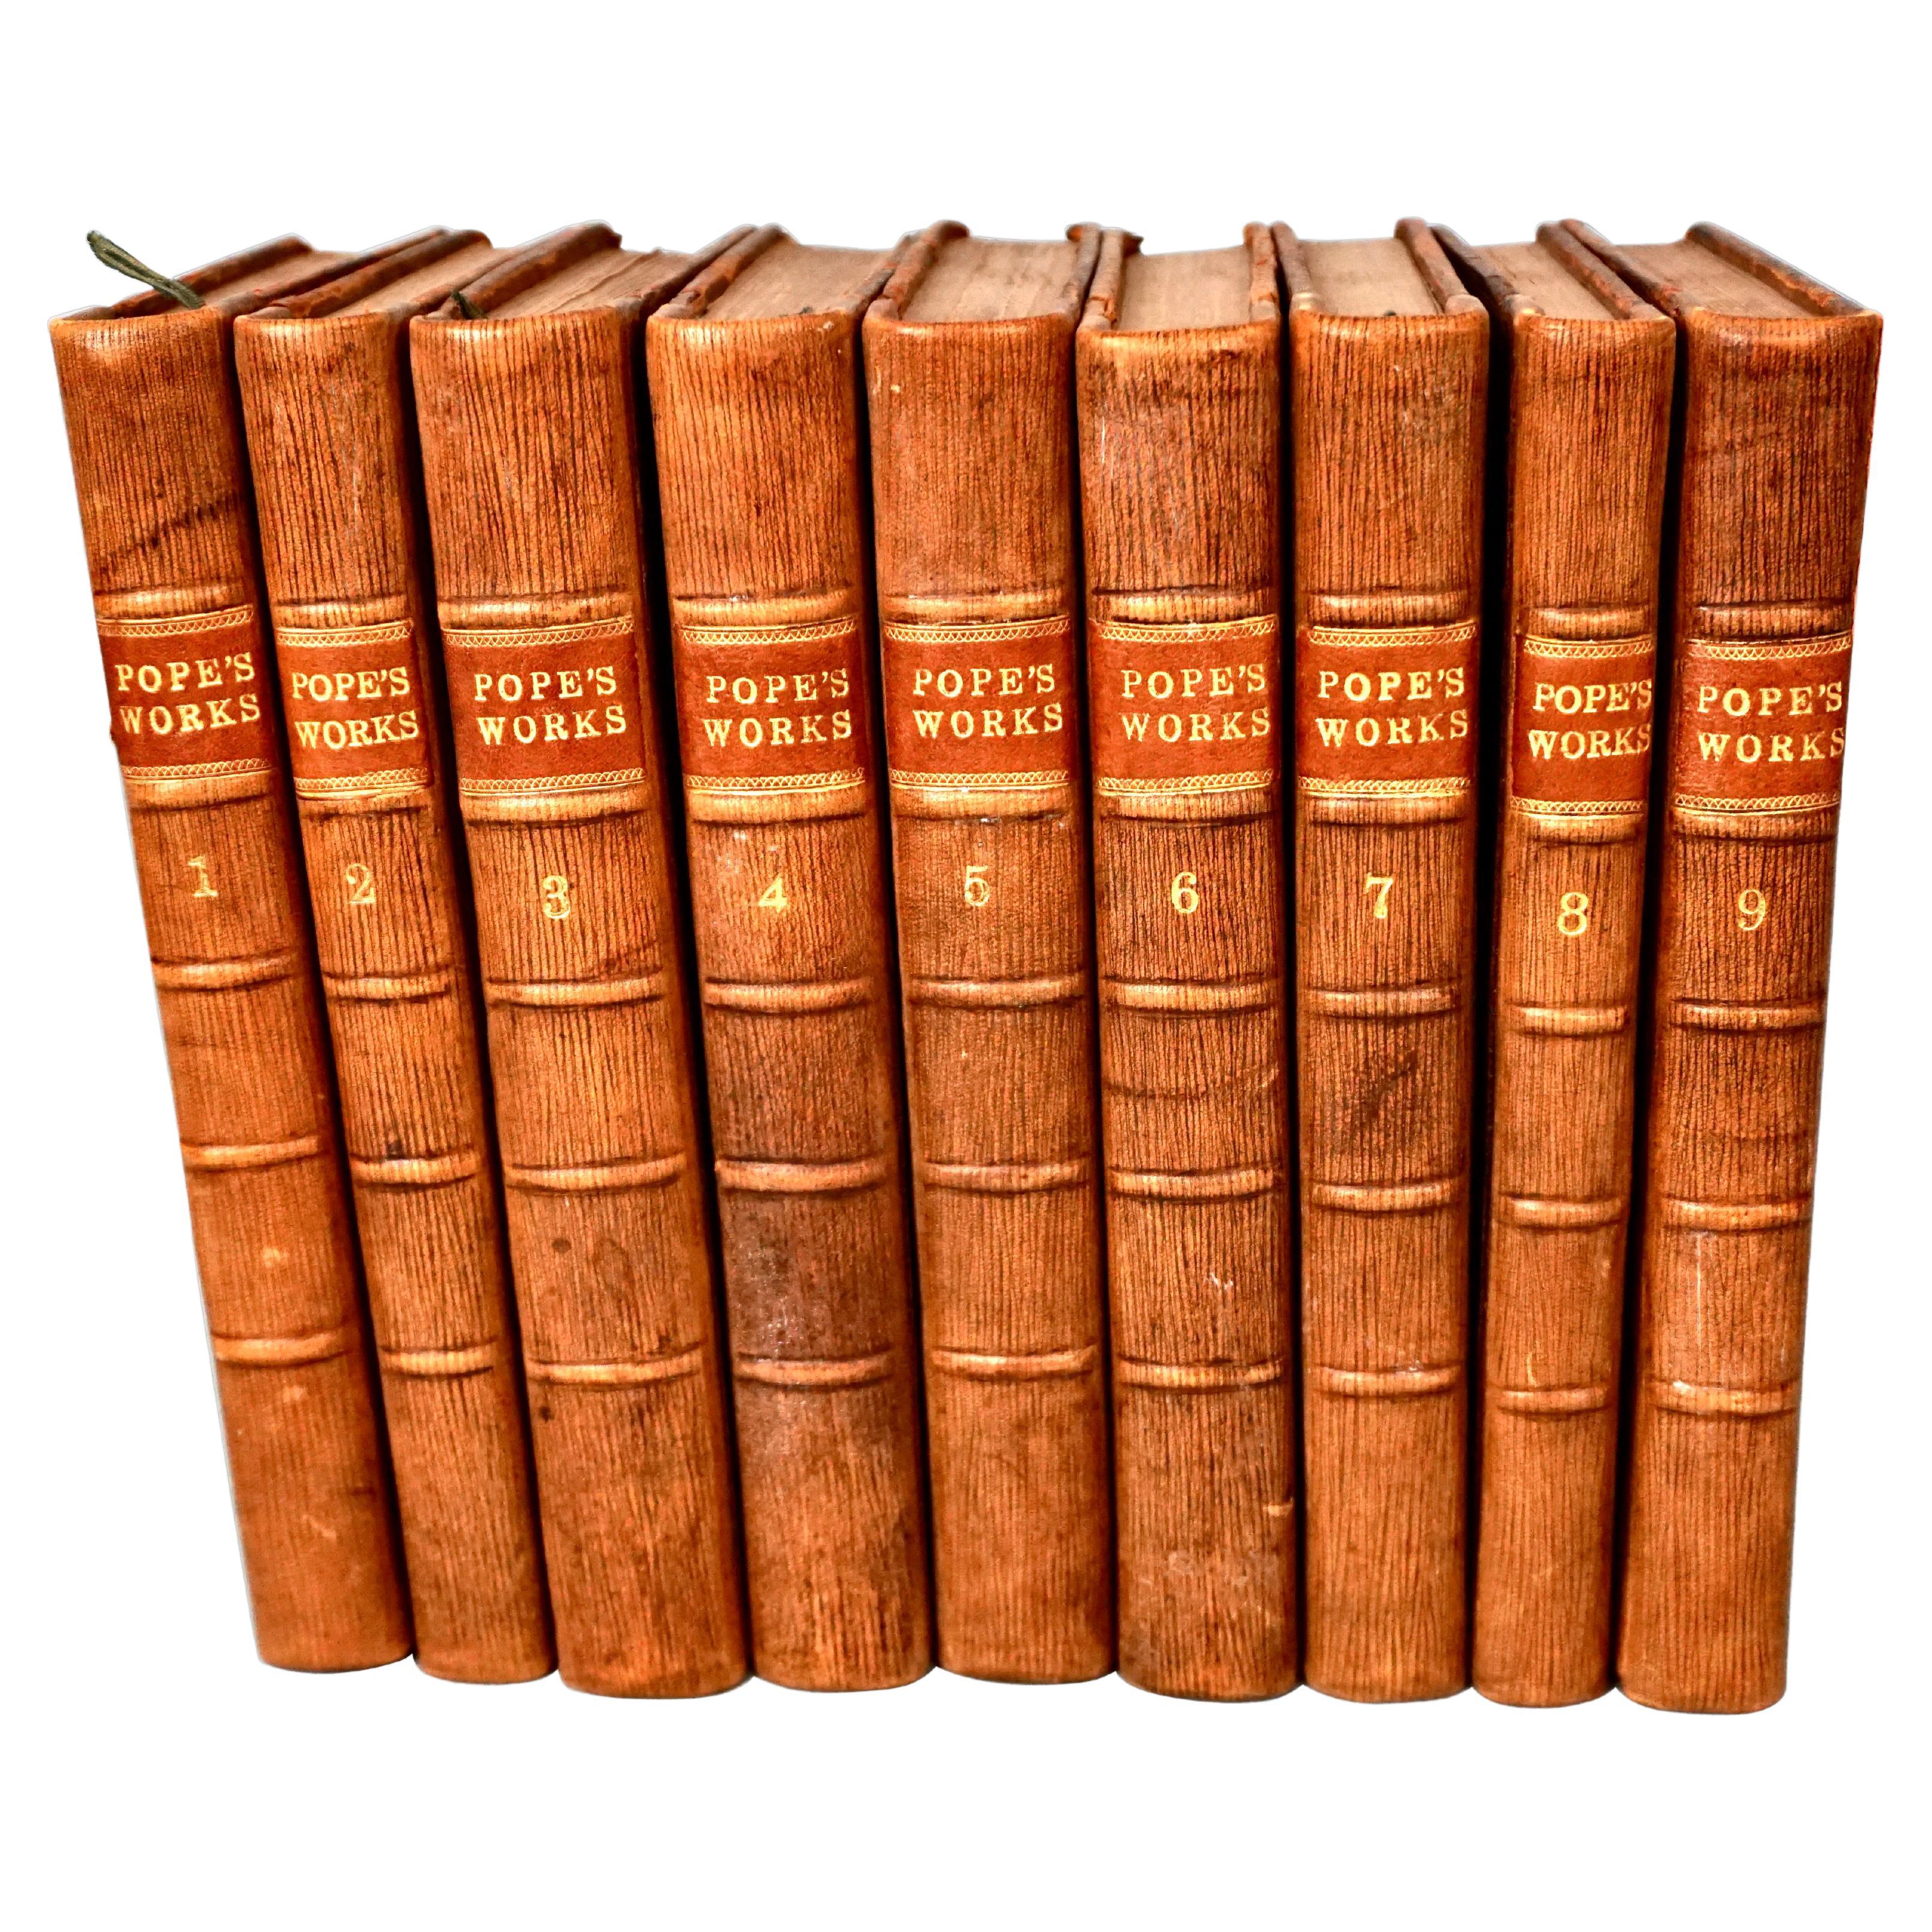 Werke von Alexander Pope, Ledergebunden in 9 Bänden, veröffentlicht 1757